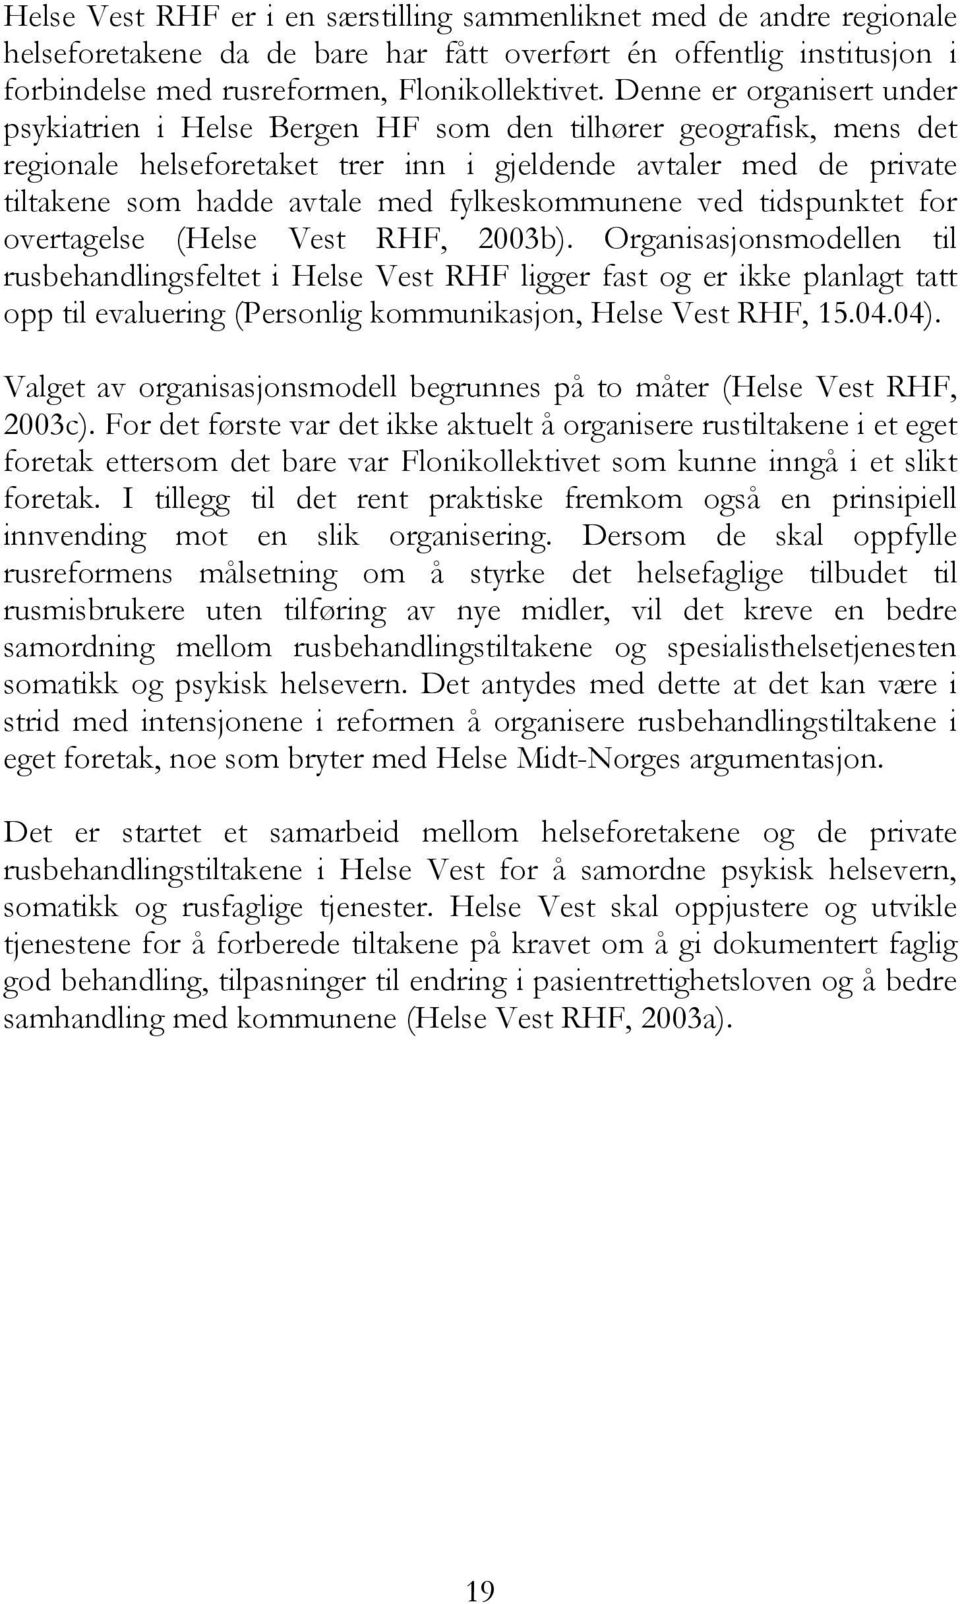 fylkeskommunene ved tidspunktet for overtagelse (Helse Vest RHF, 2003b).